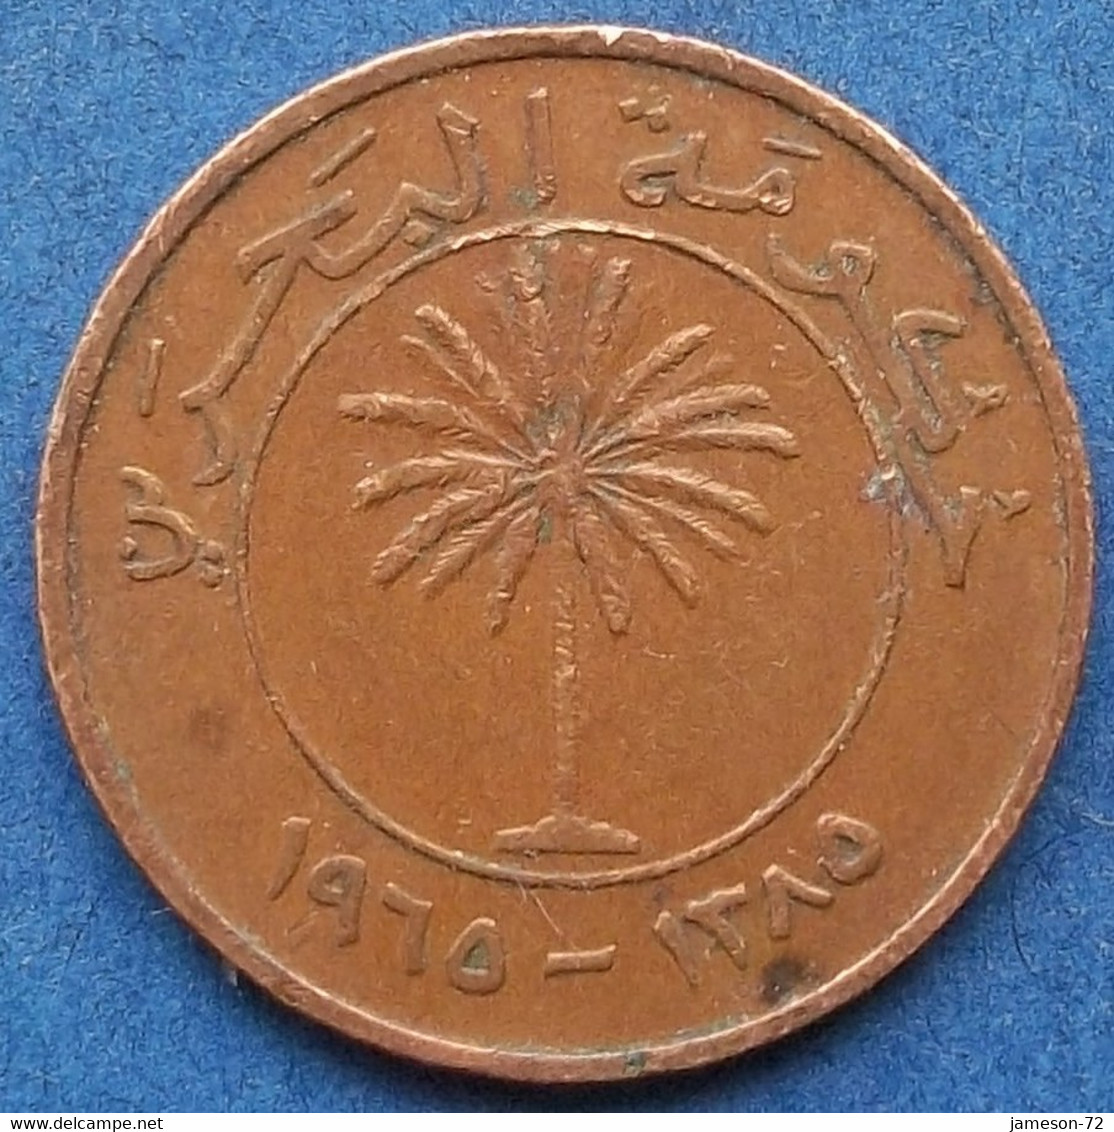 BAHRAIN - 5 Fils AH1385 / 1965AD KM# 2 Isa Bin Salman (1961-1999) - Edelweiss Coins - Bahrain